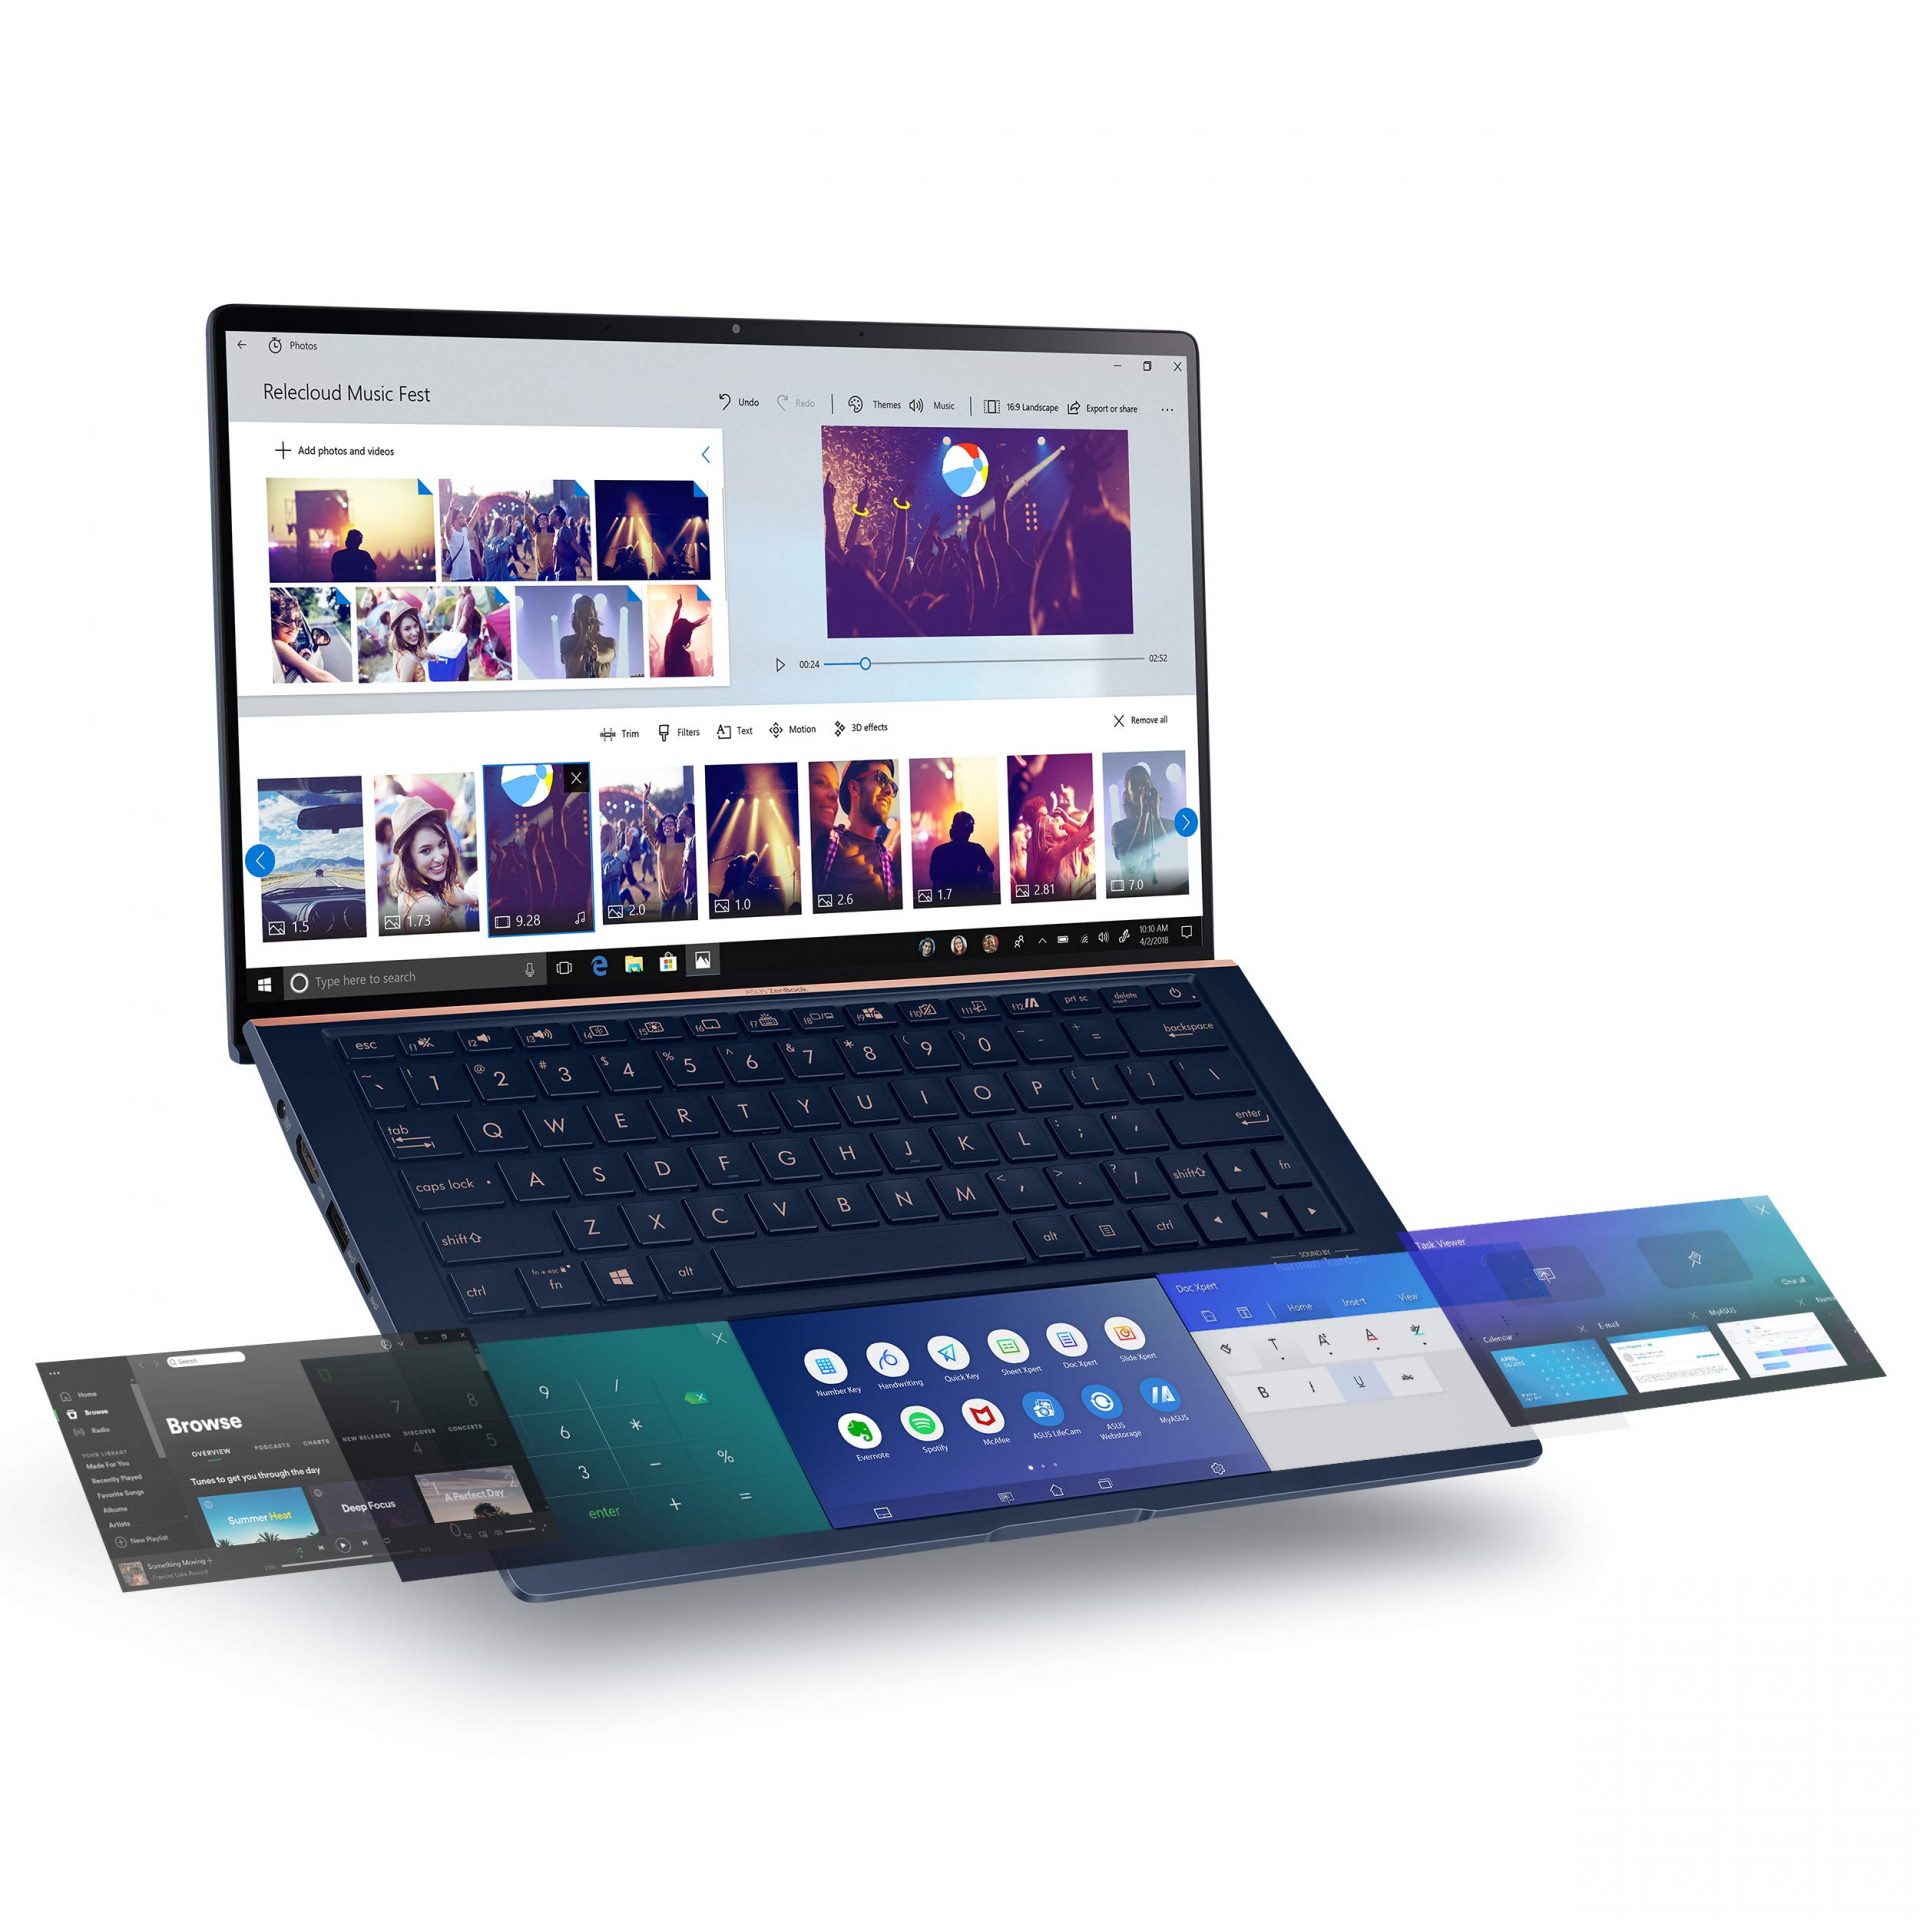 ASUS ZenBook UX334FLC-پلازا دیجیتال